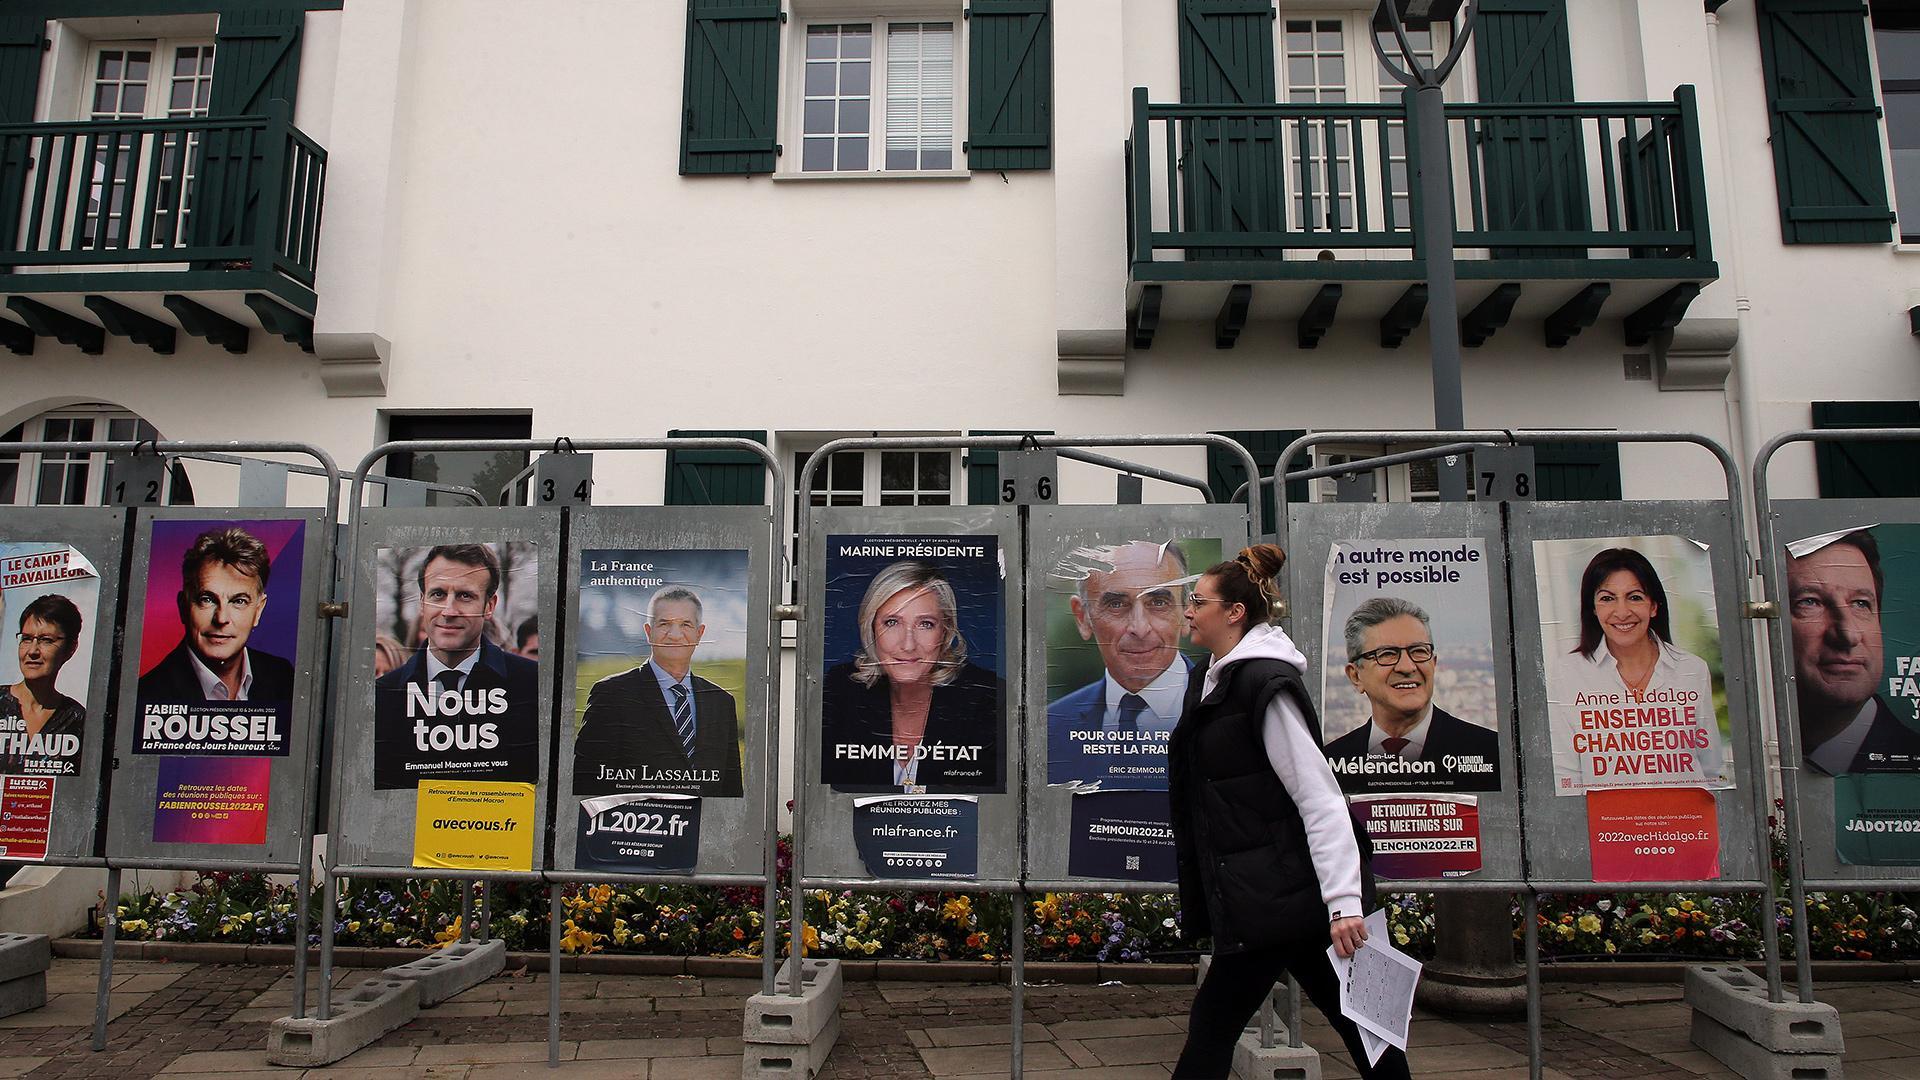 Когда президентские выборы во франции